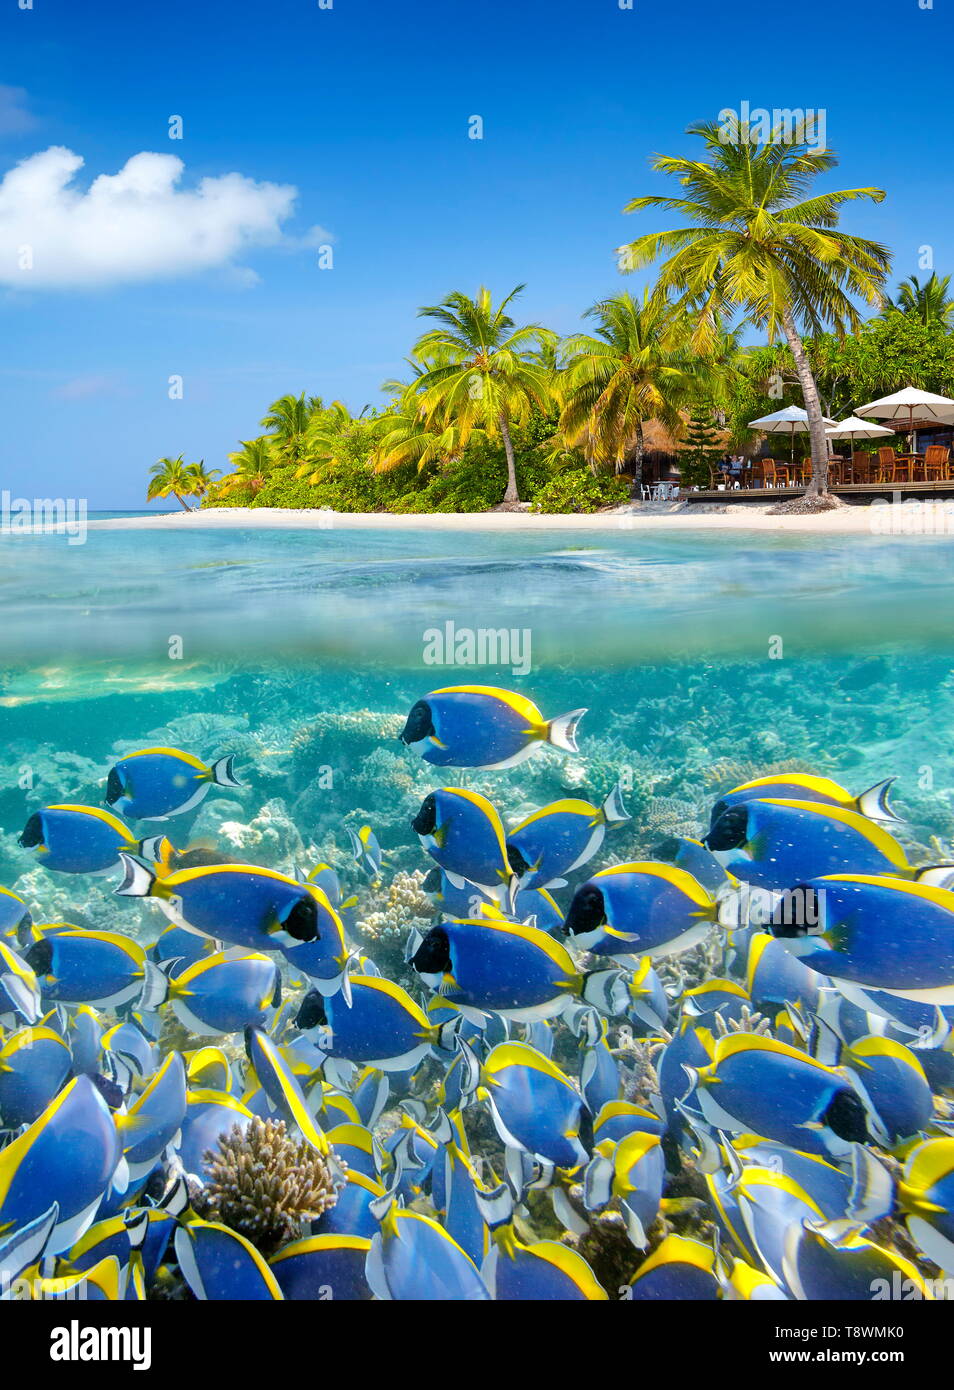 Paesaggio tropicale a isole Maldive, atollo di Ari Foto Stock